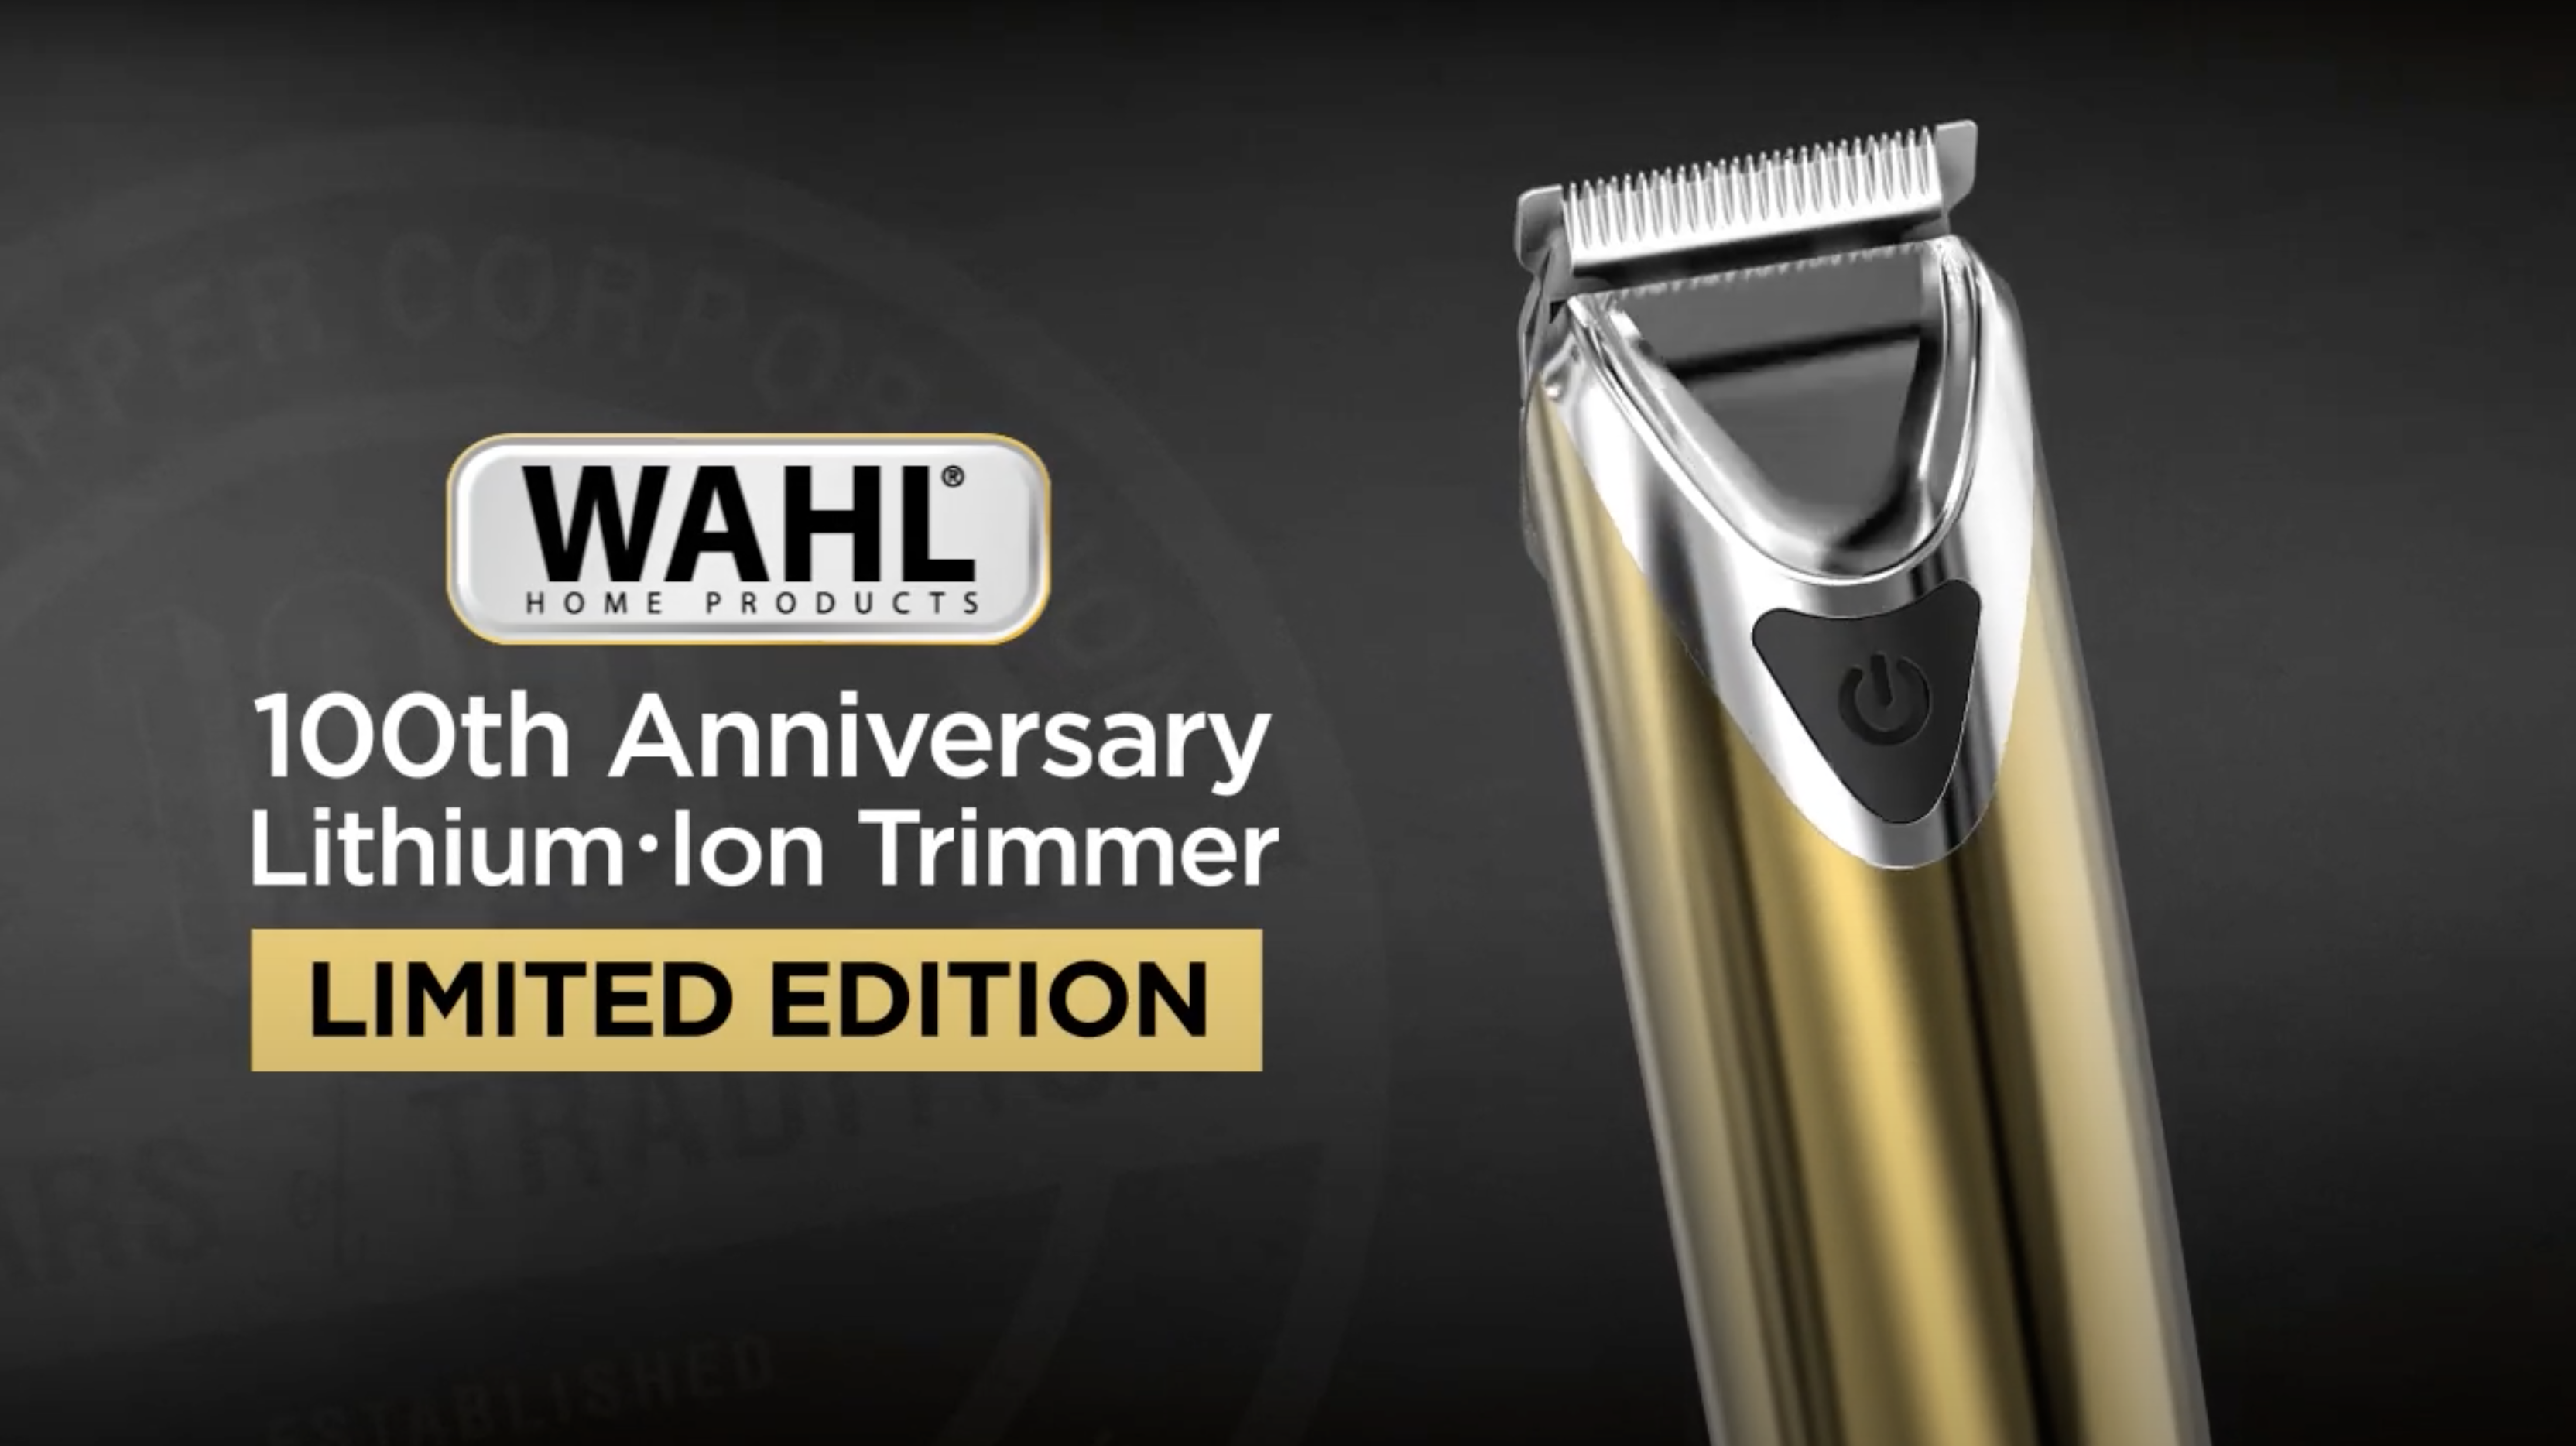 wahl 18k gold trimmer